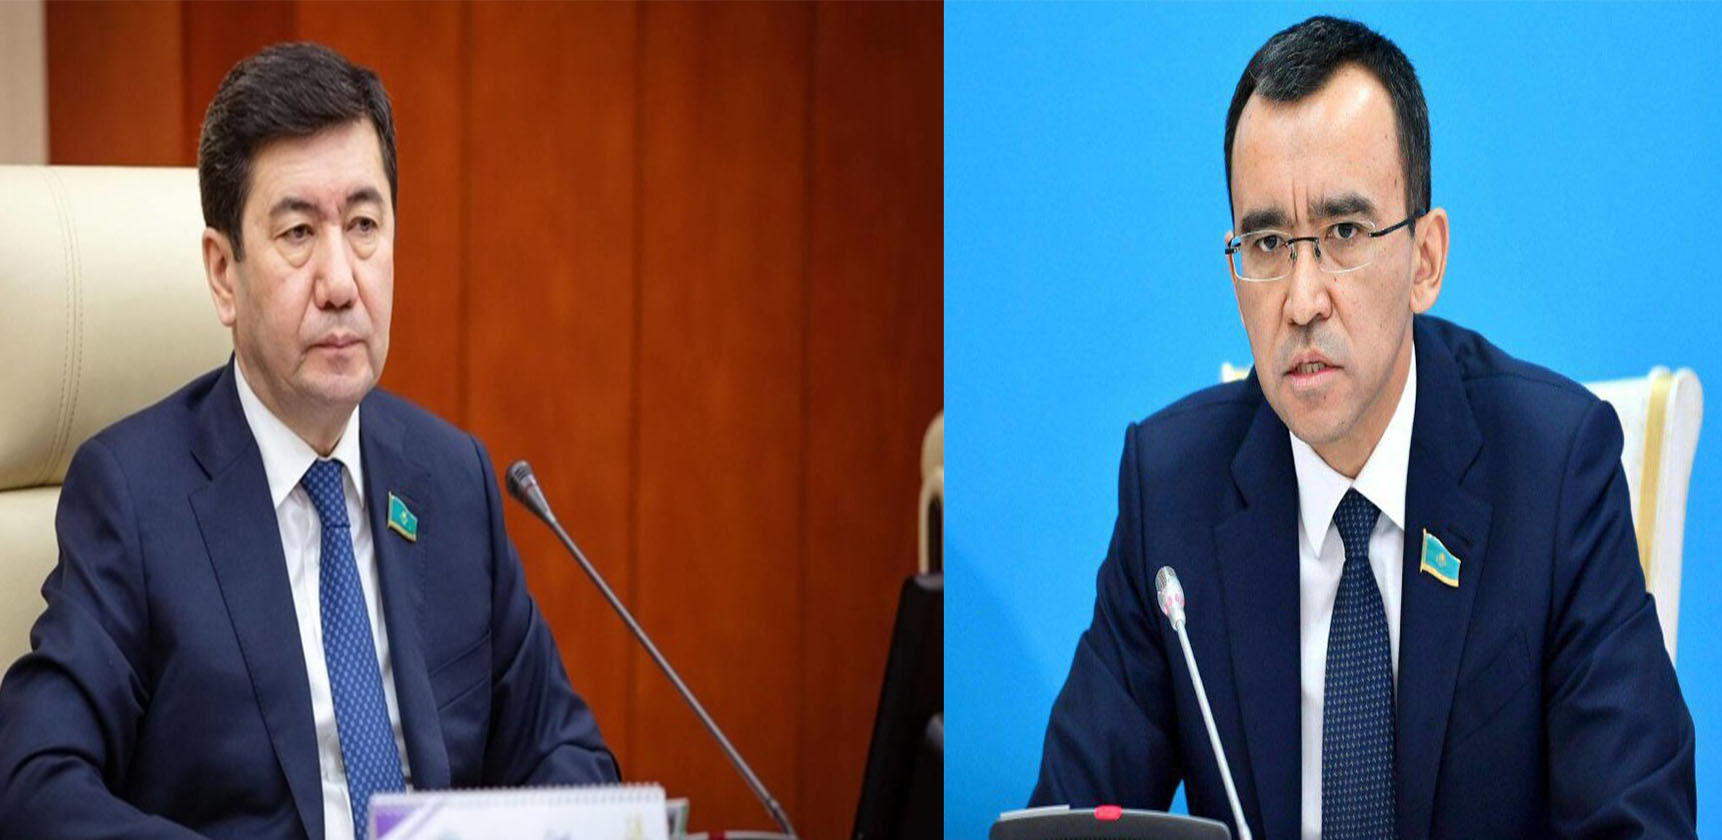 Le Secrétaire Général Félicite les Présidents du Parlement du Kazakhstan